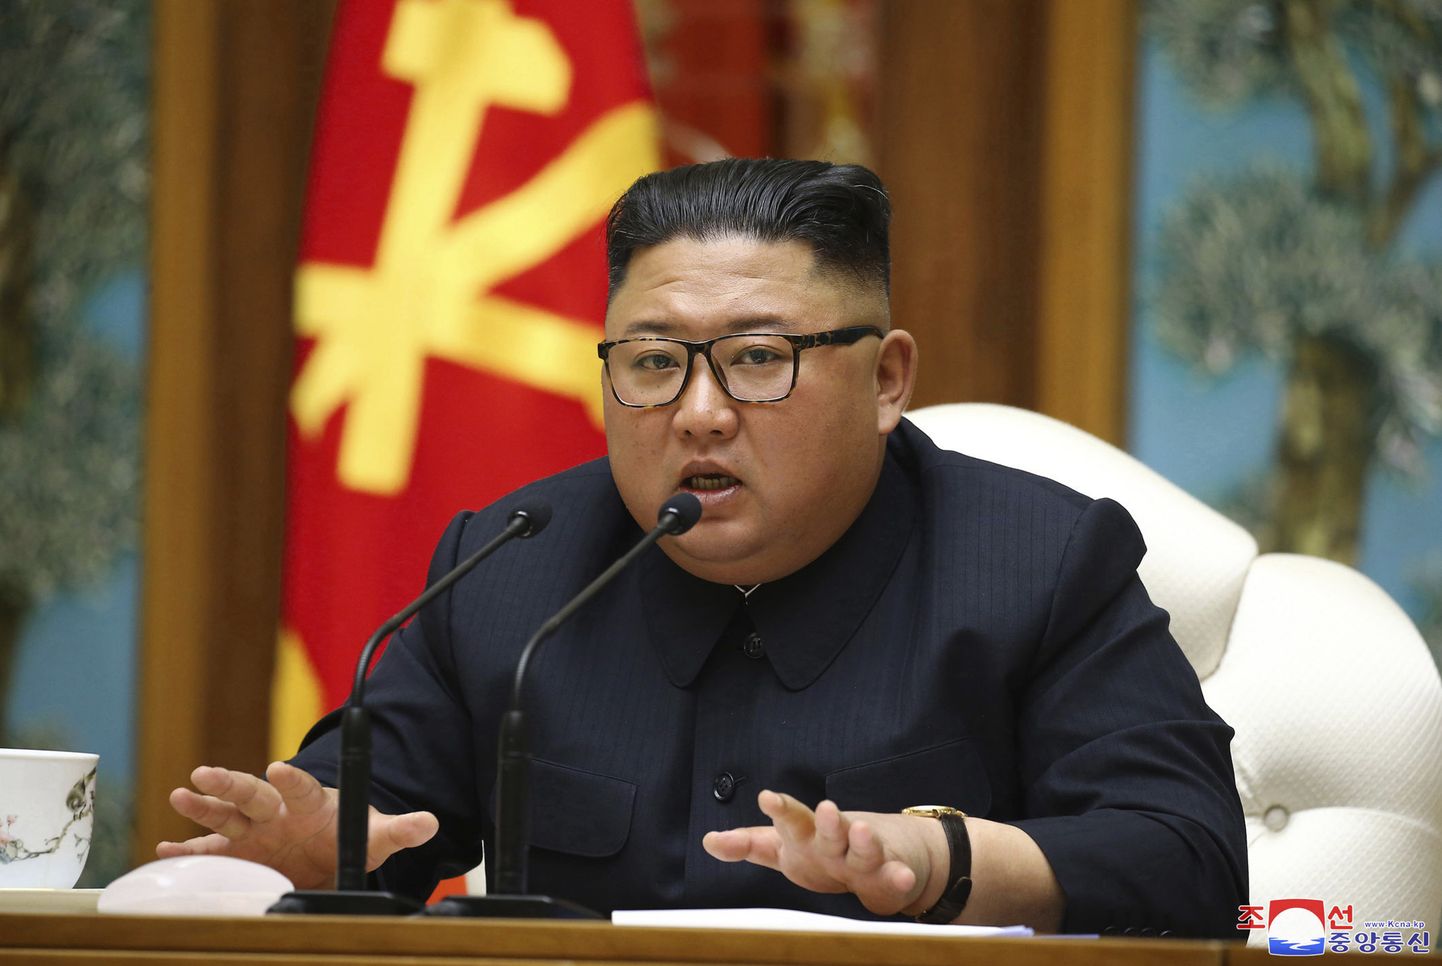 Põhja-Korea liider Kim Jong-un võimupartei poliitbüroo kohtumisel, kus arutati võitlust koroonaviiruse pandeemia vastu.